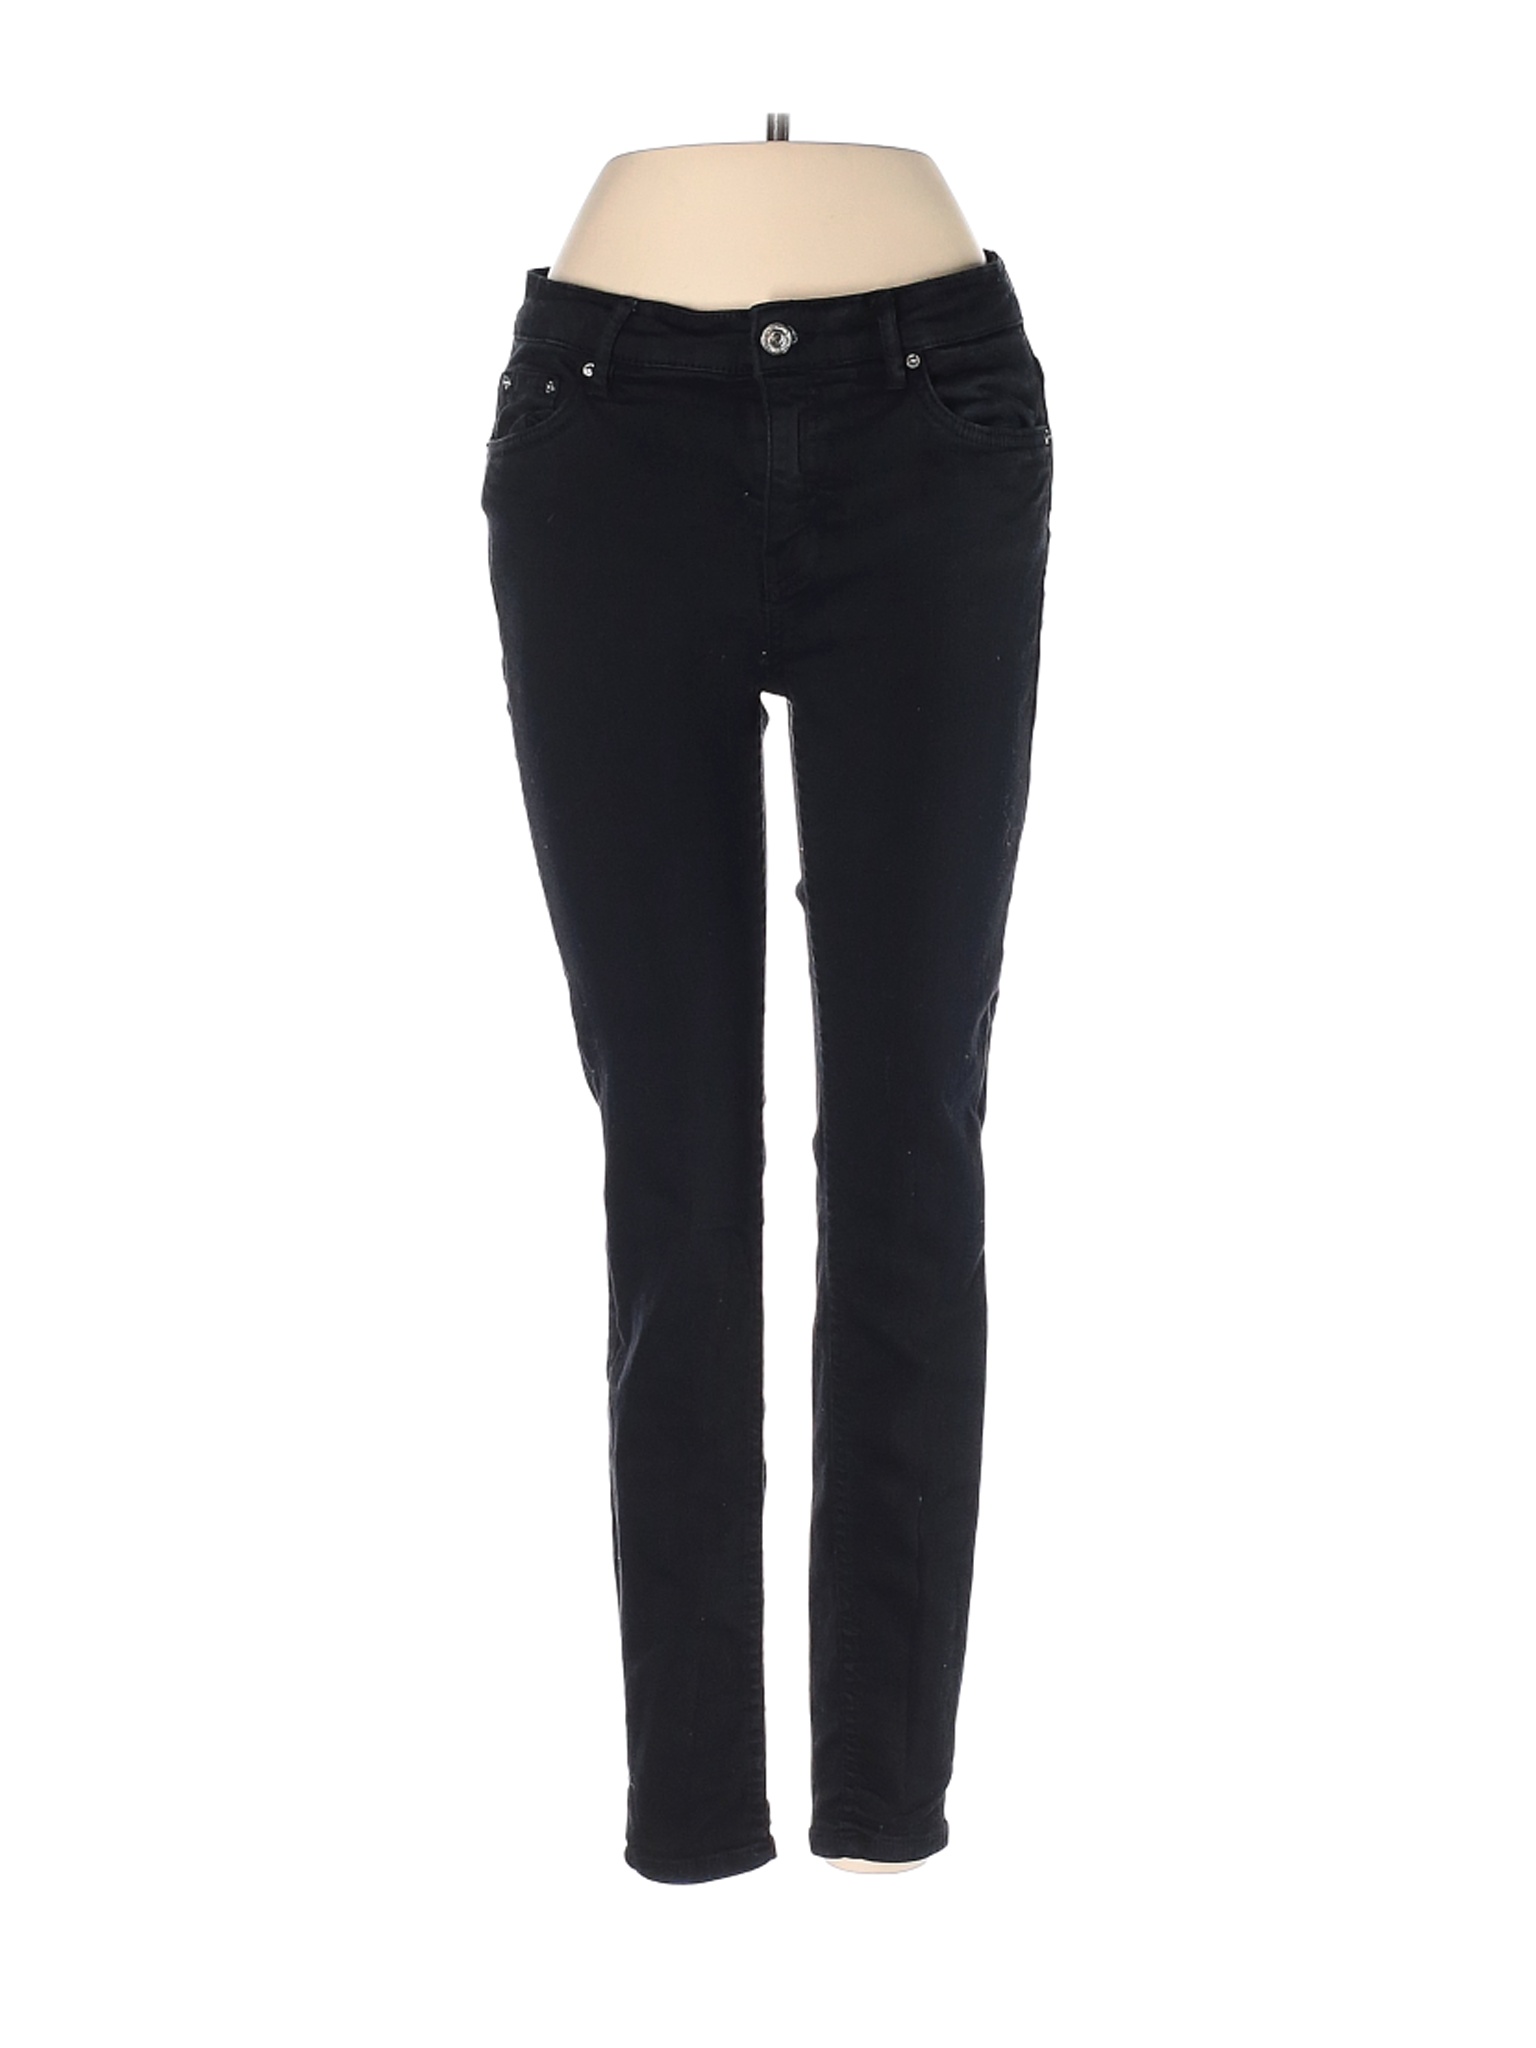 Zara Women Black Jeans 4 | eBay